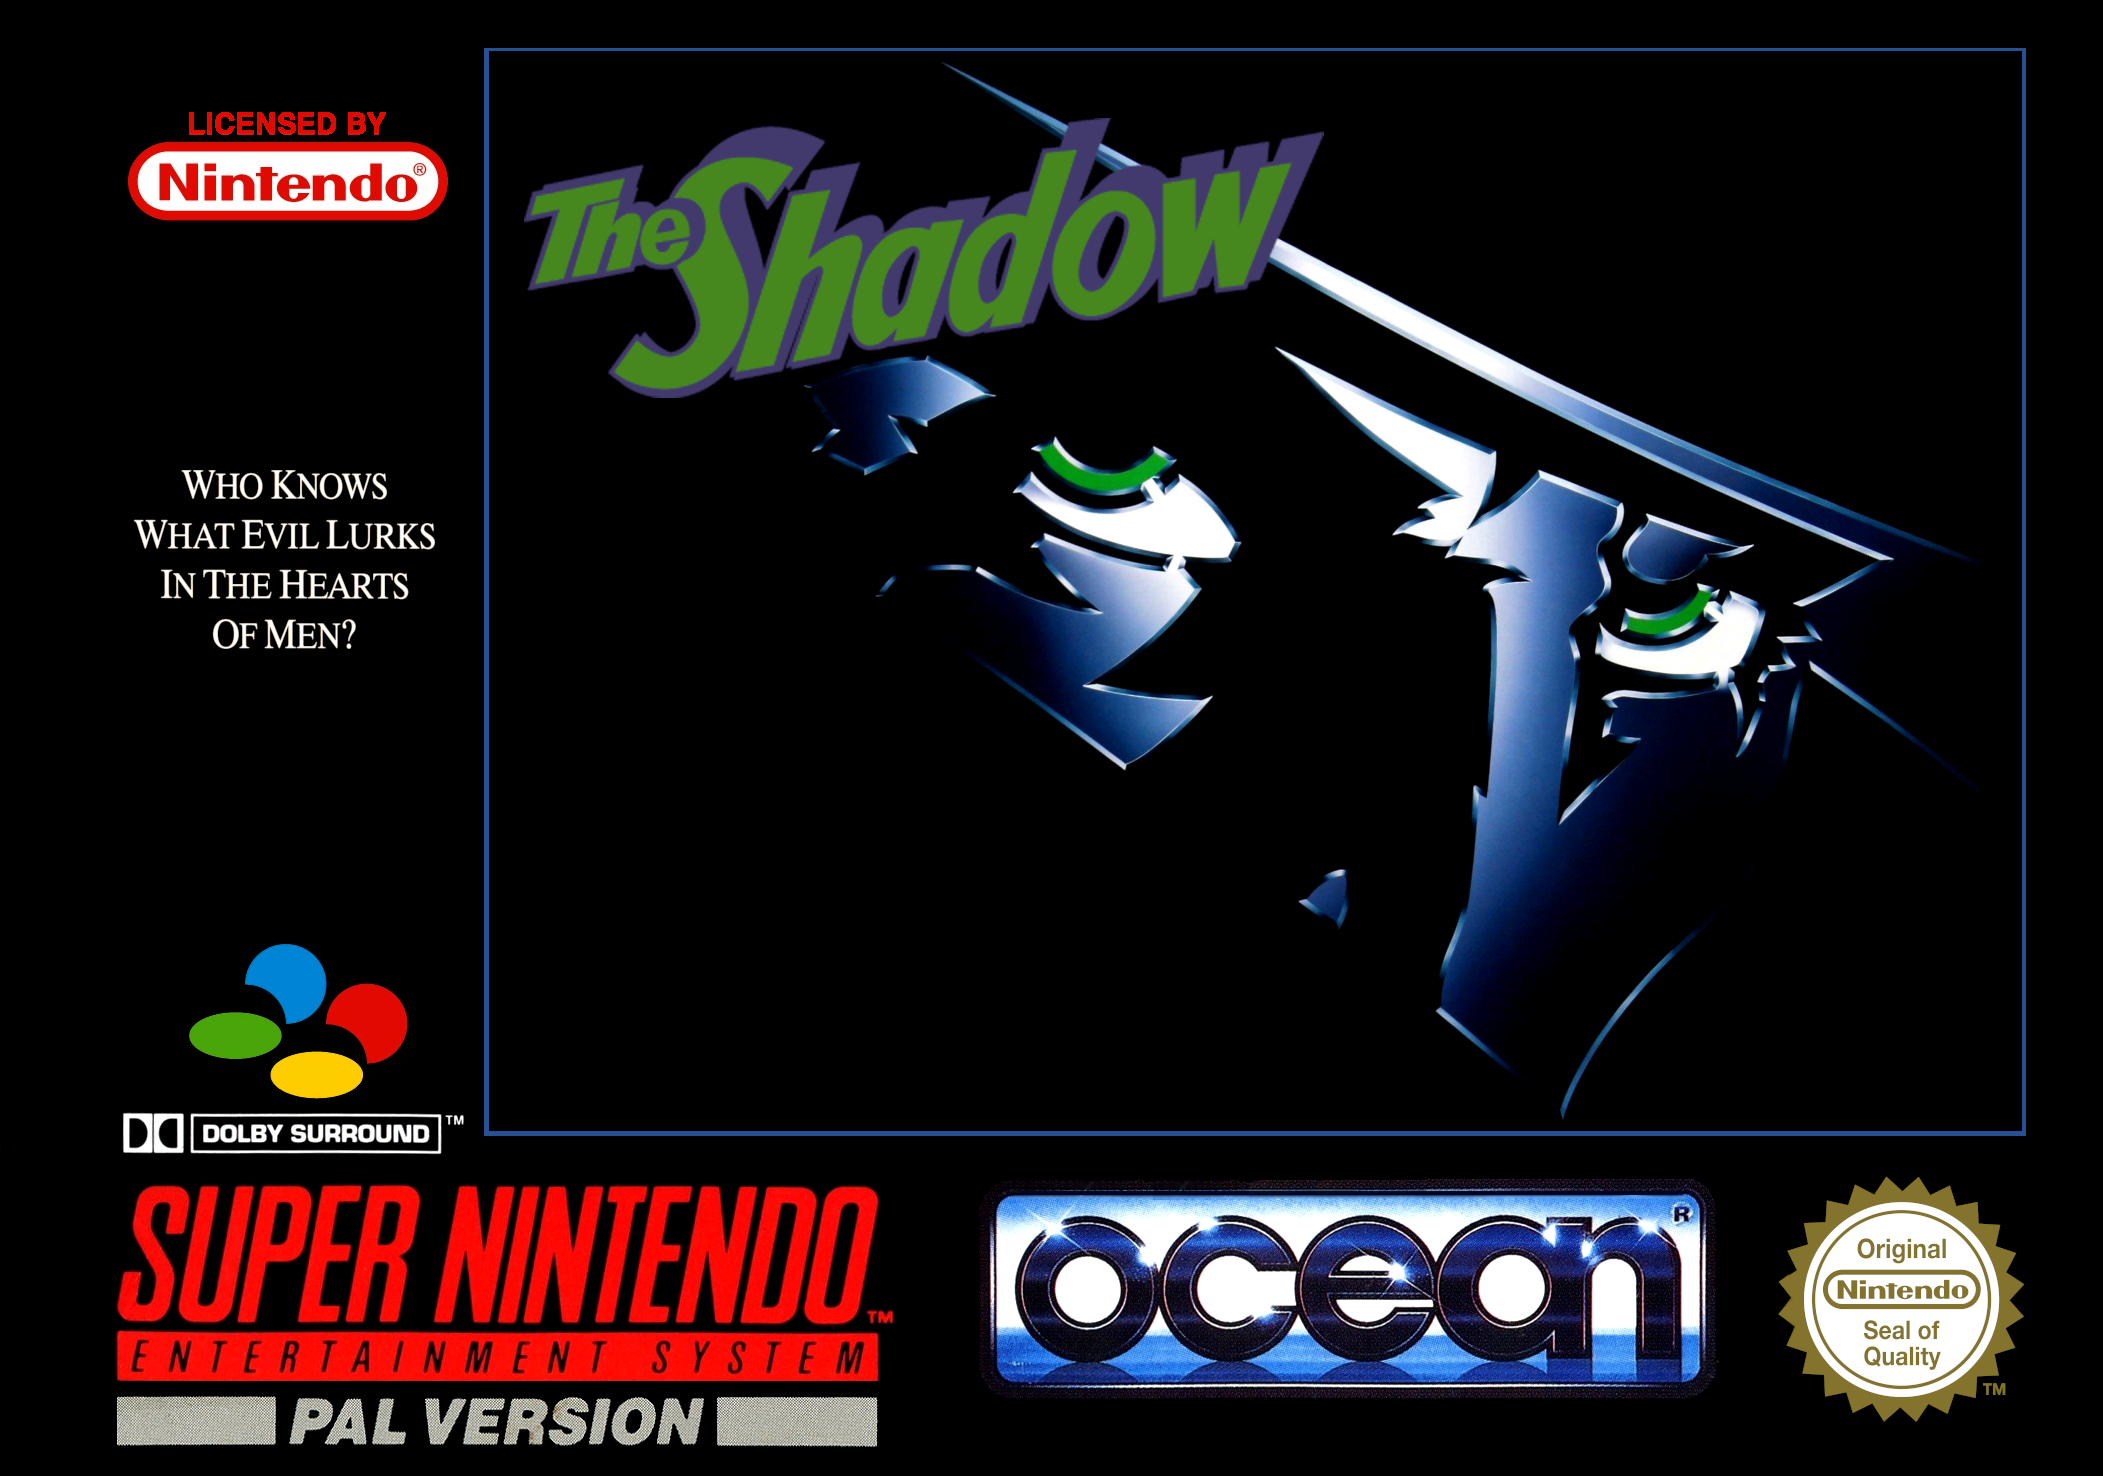 Обложка shadow. The Shadow 1994. The Shadow Snes. Shadow Snes обложка. Legend Snes обложка.